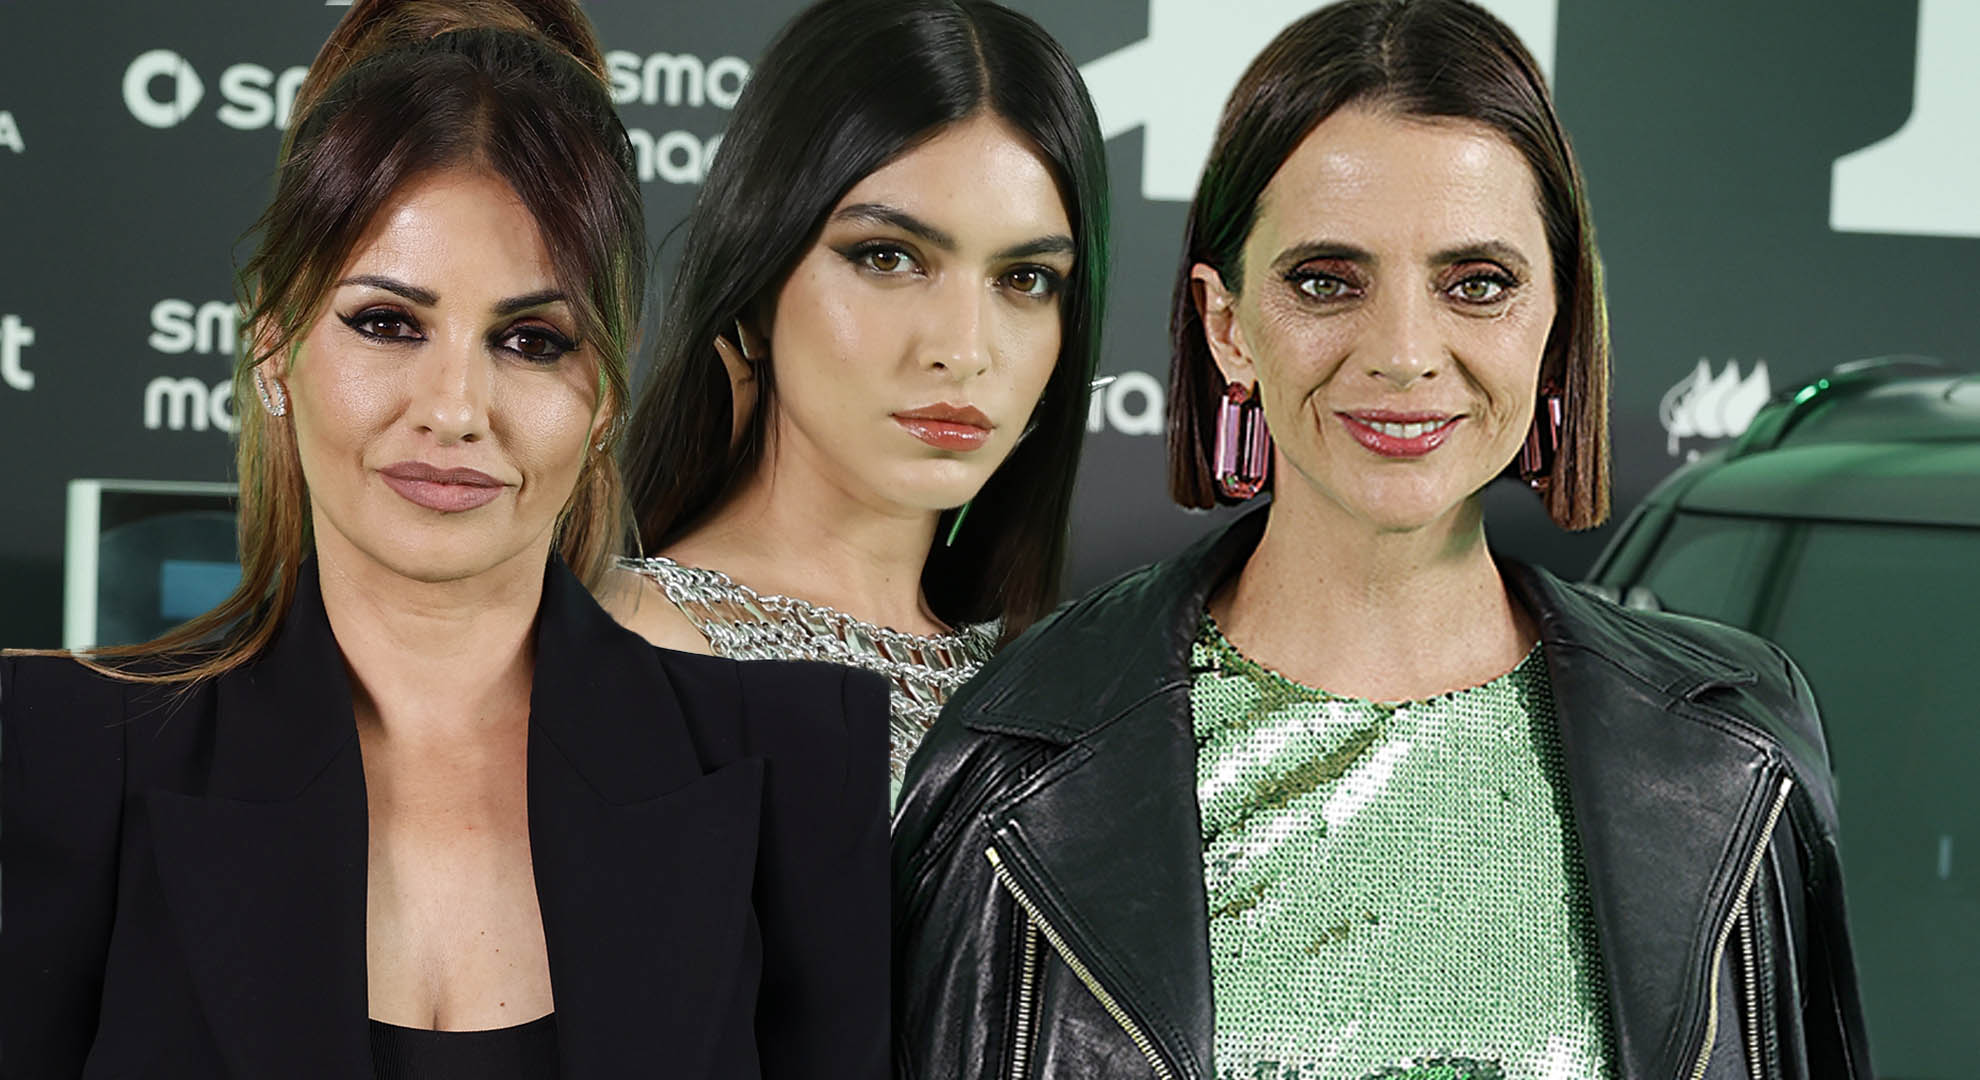 Los looks de Lucía Rivera, Macarena Gómez y Mónica Cruz: brillo de tendencia vs elegancia clásica